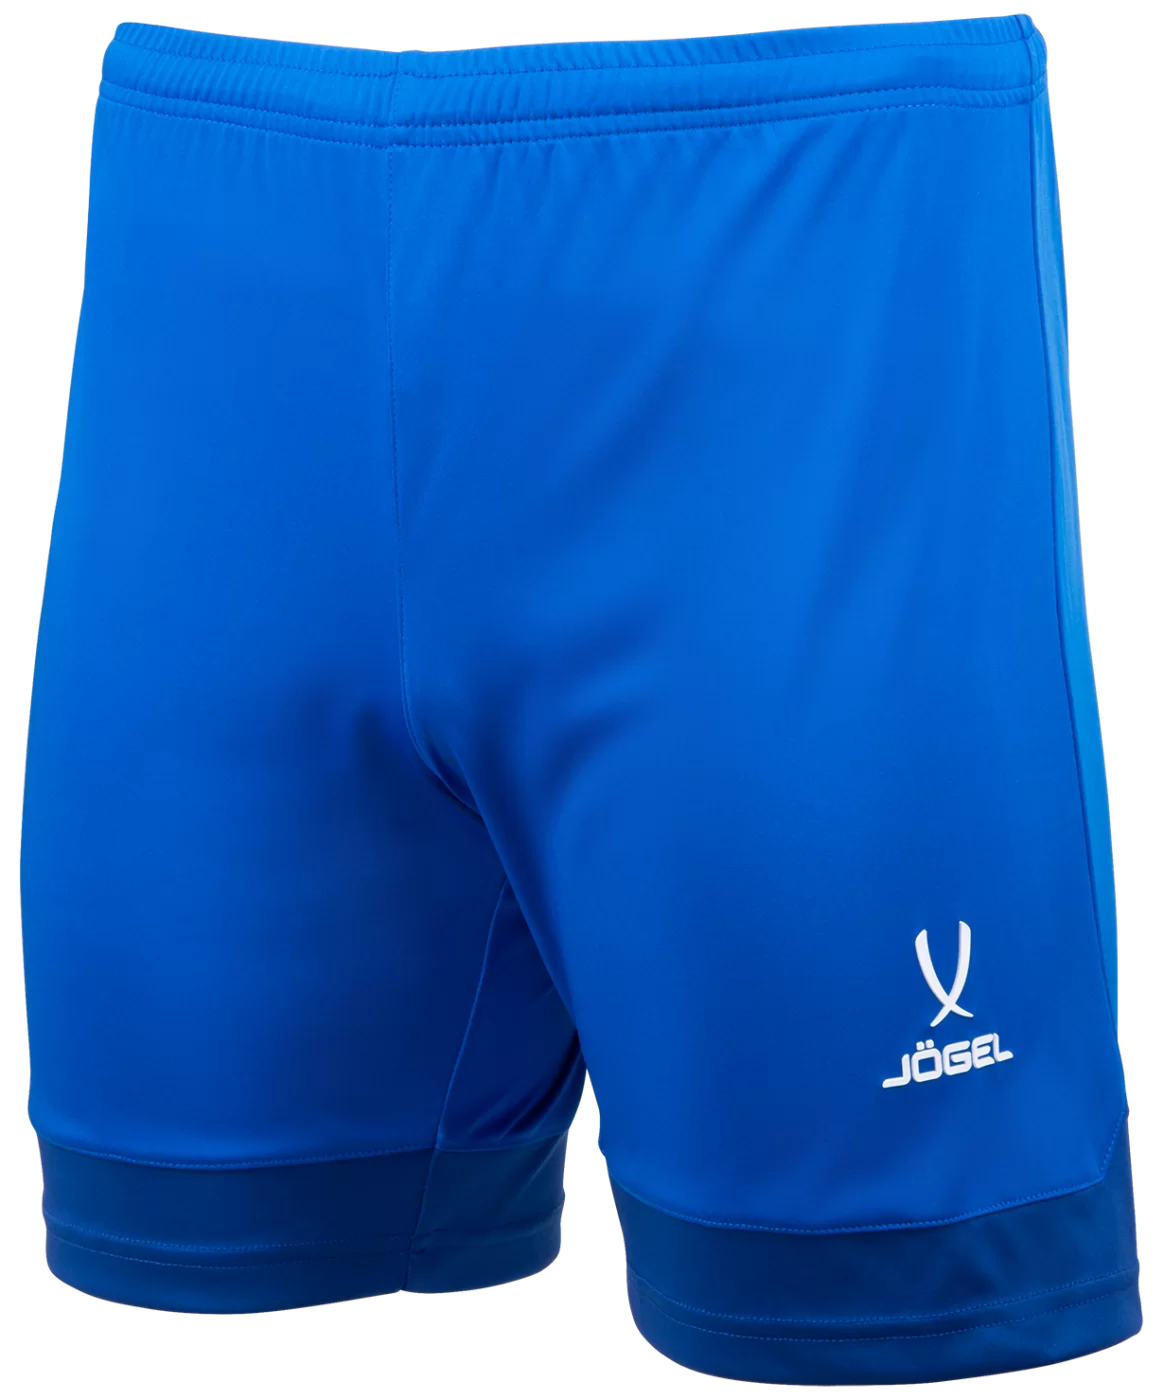 Реальное фото Шорты игровые DIVISION PerFormDRY Union Shorts, синий/темно-синий/белый от магазина СпортСЕ